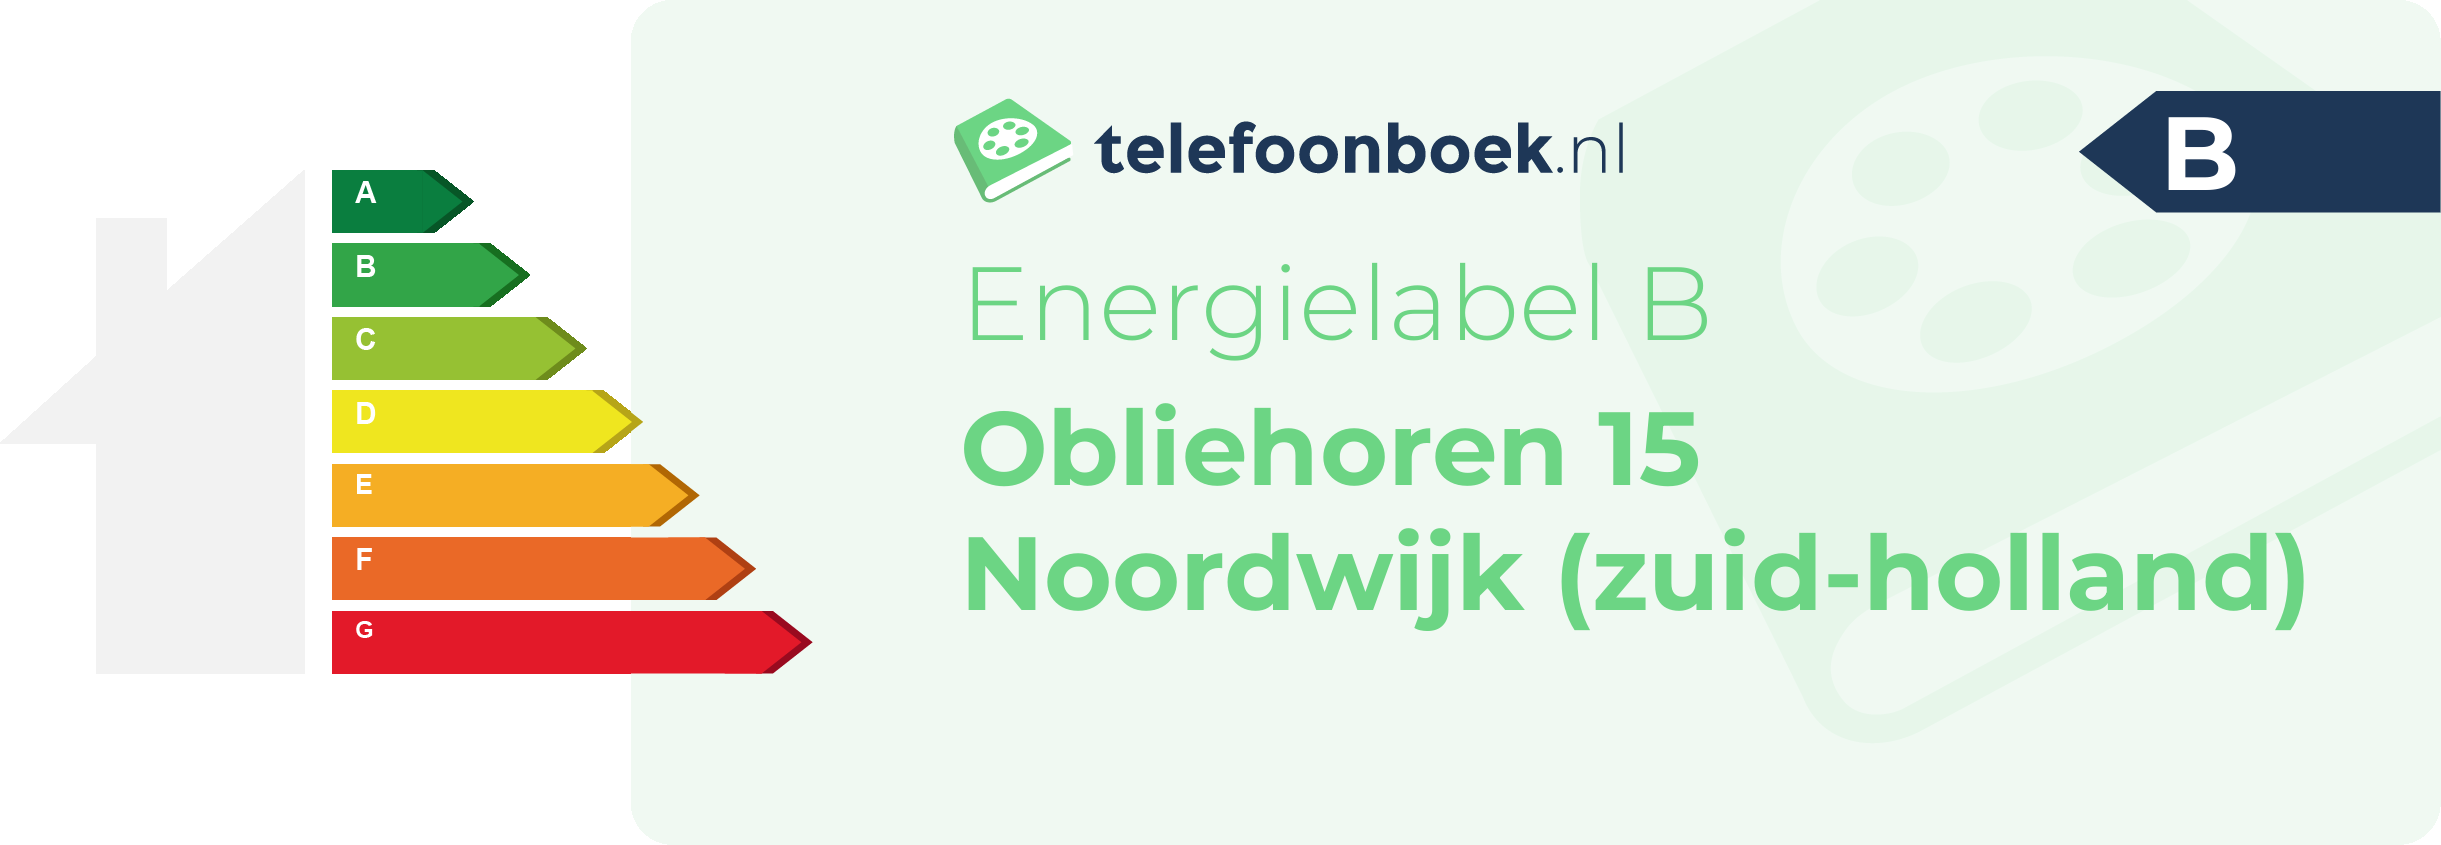 Energielabel Obliehoren 15 Noordwijk (Zuid-Holland)